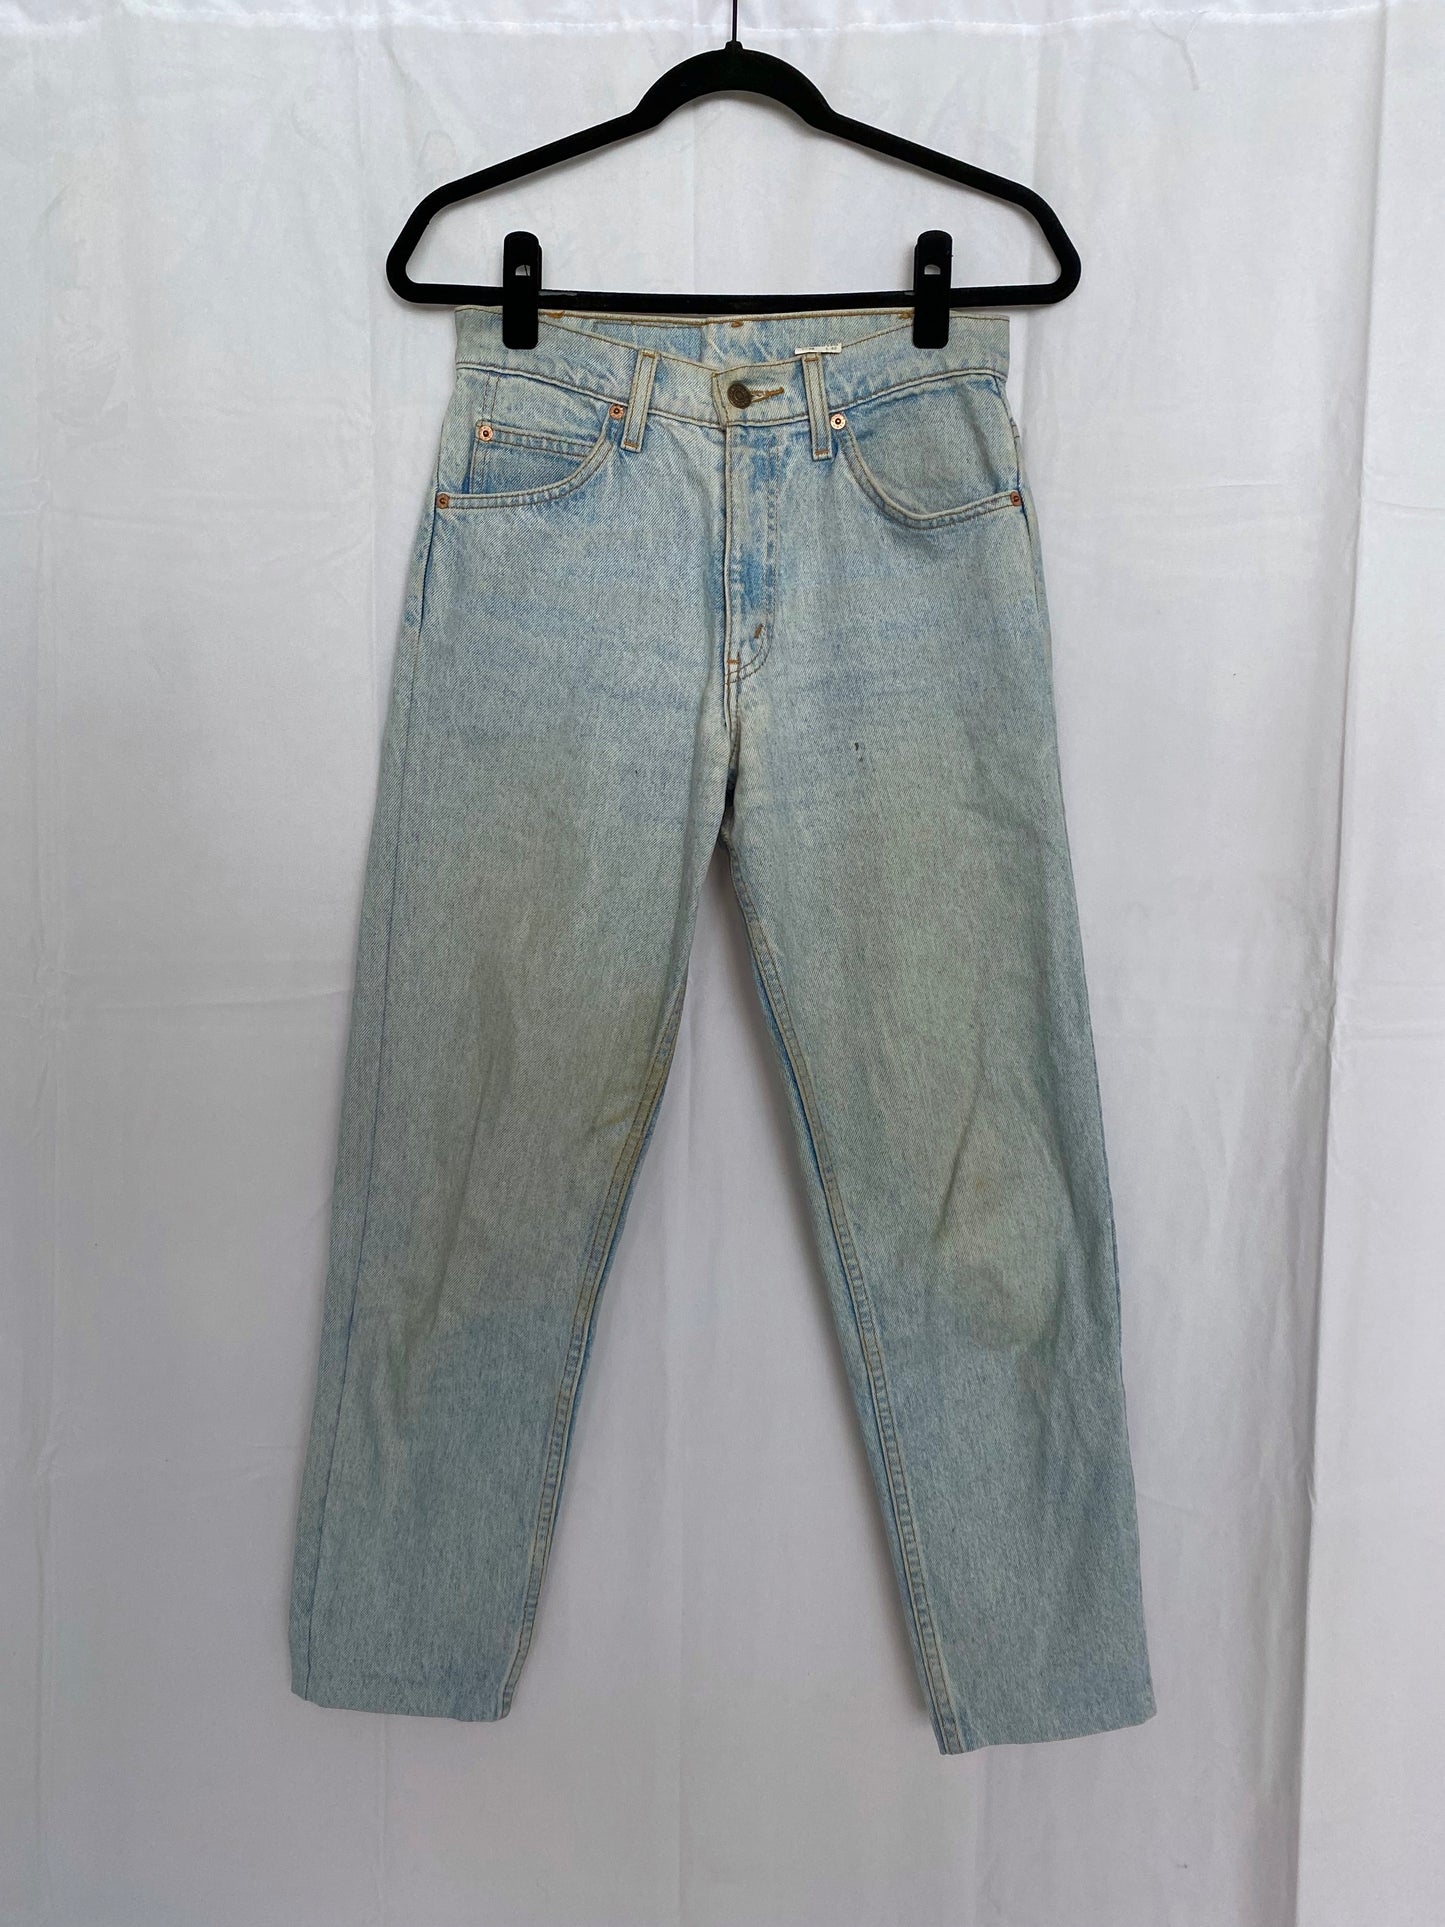 Vintage 90s Levi's 550 Jeans